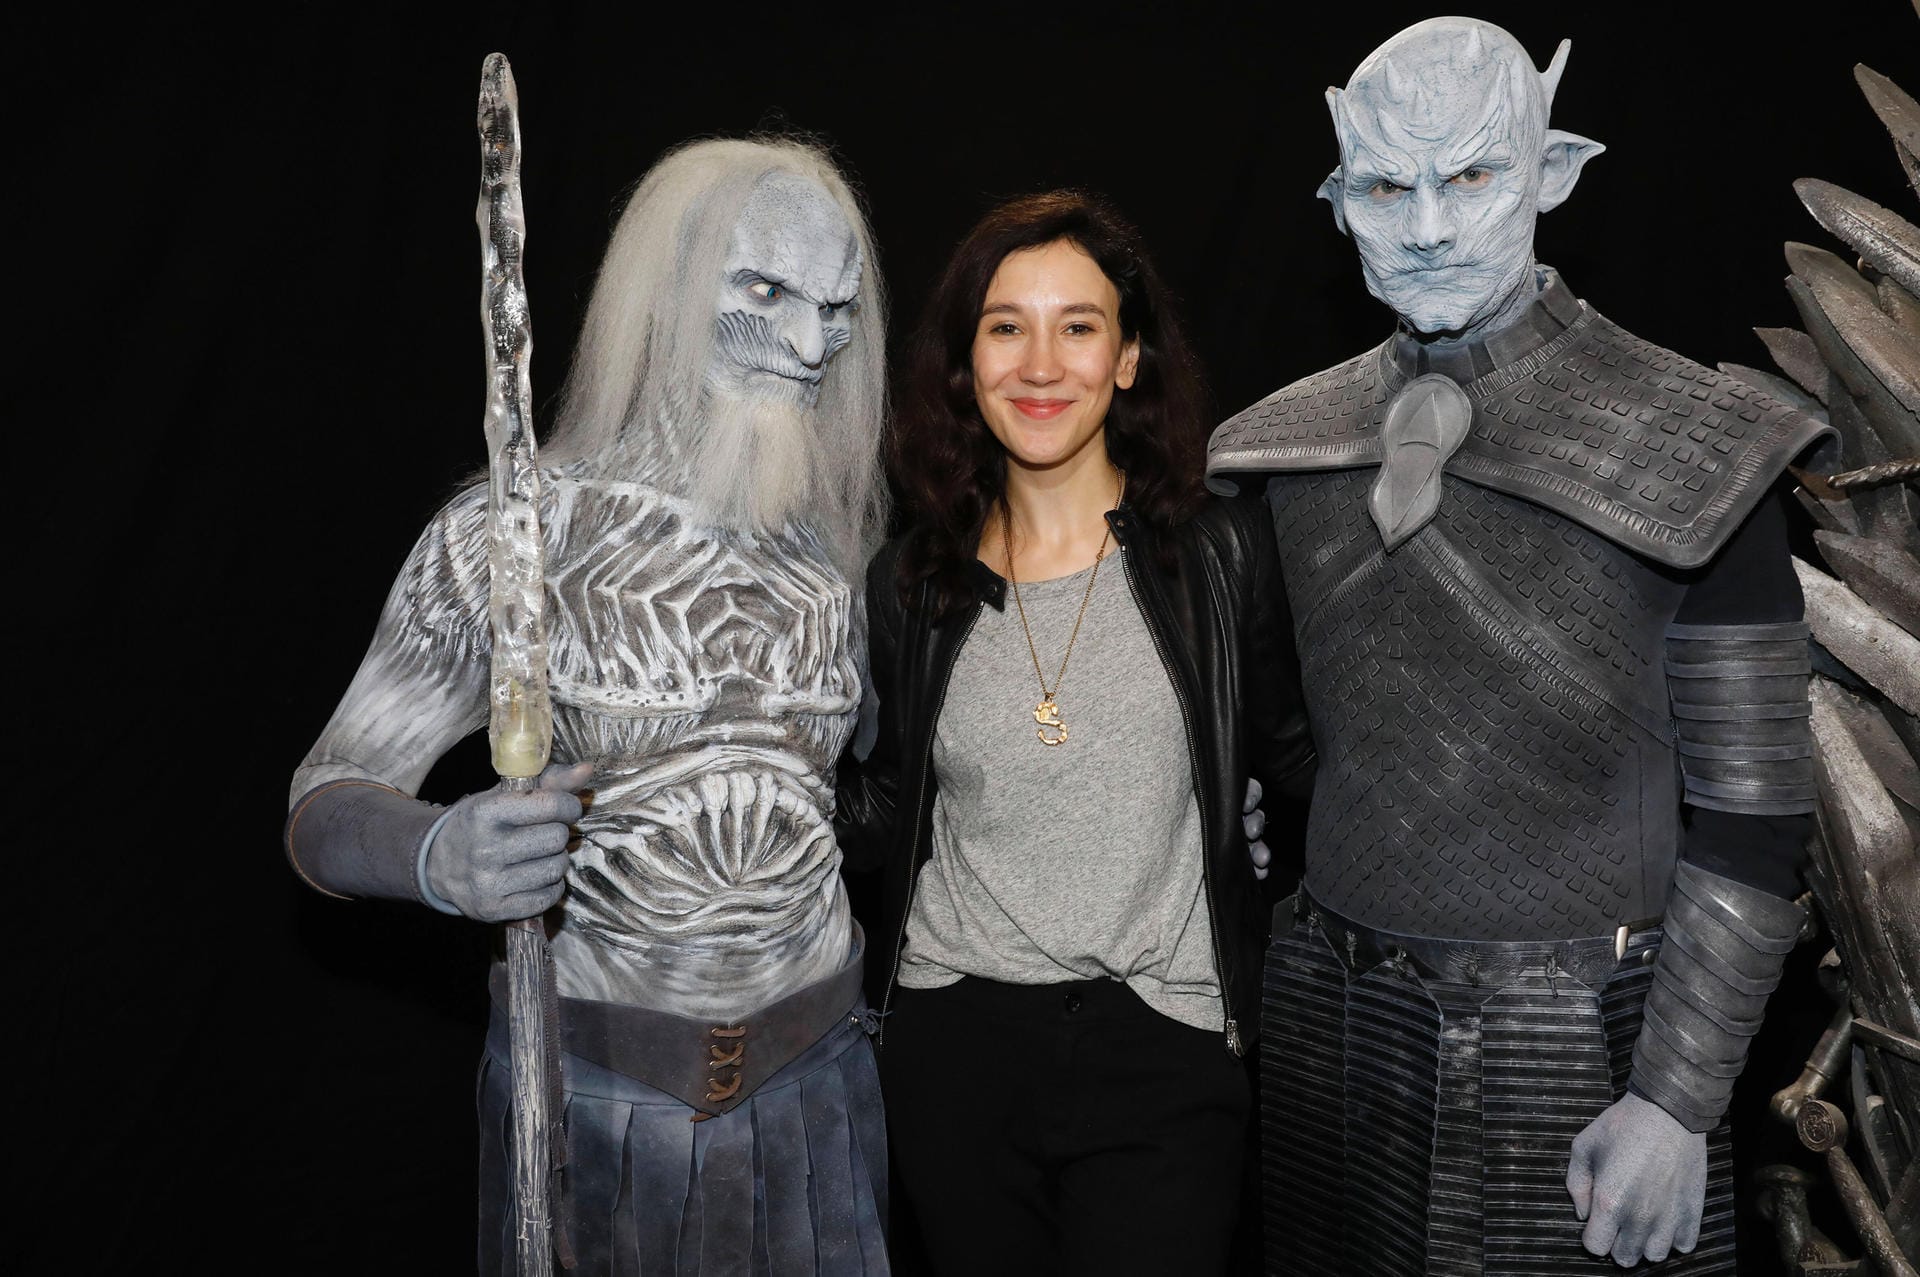 2019: Sibel Kekilli auf der "Throne Con" im Maritim Airport Hotel Hannover. Hier gab sie Fans der Fantasyserie "Game of Thrones" auch Autogramme.